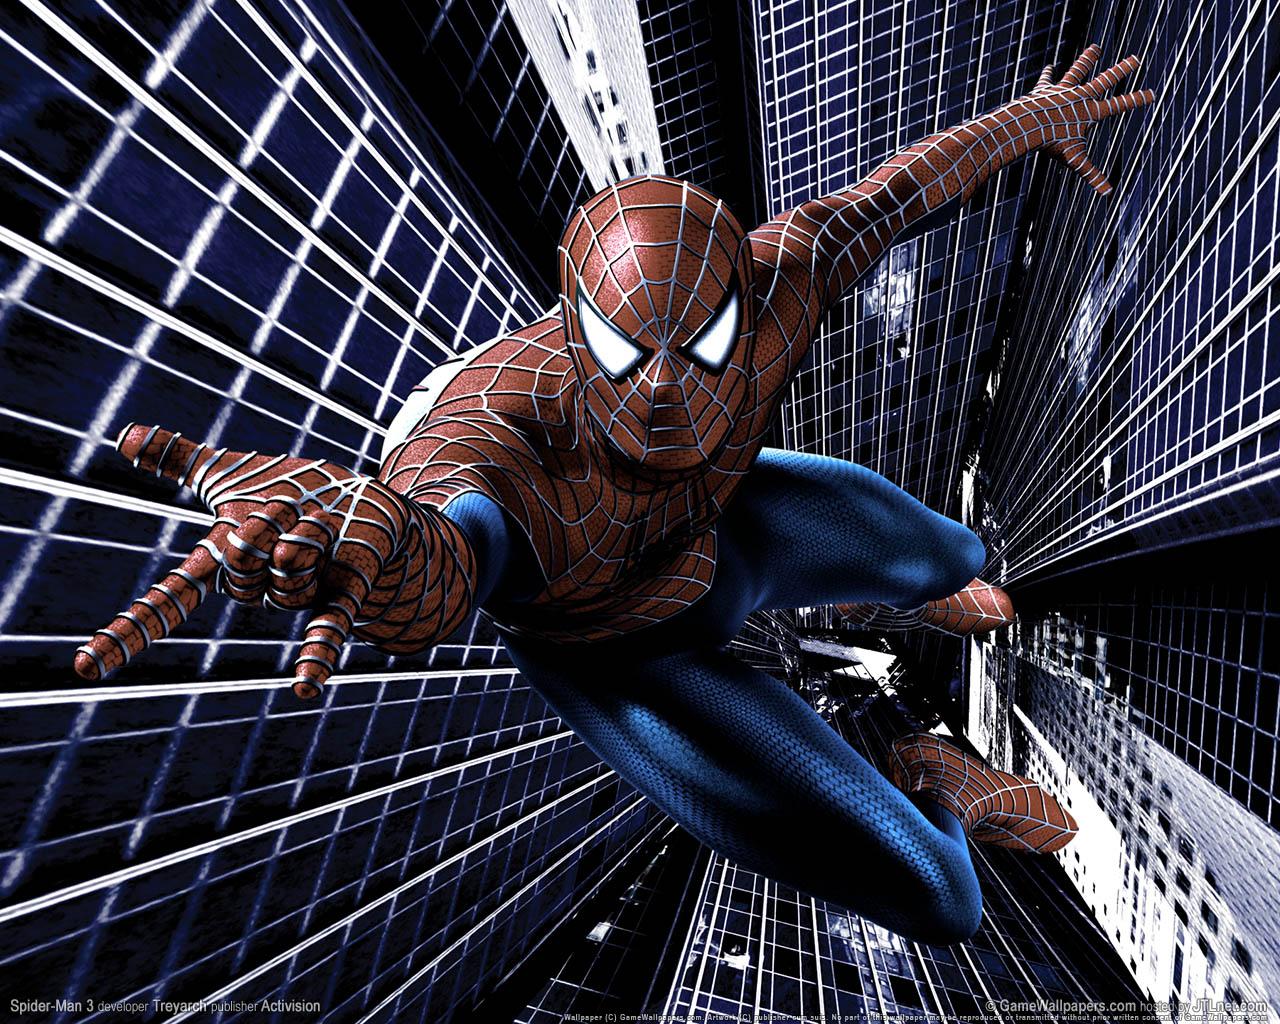 Spider-Man 4 : sortie simultanée en IMAX en mai 2011